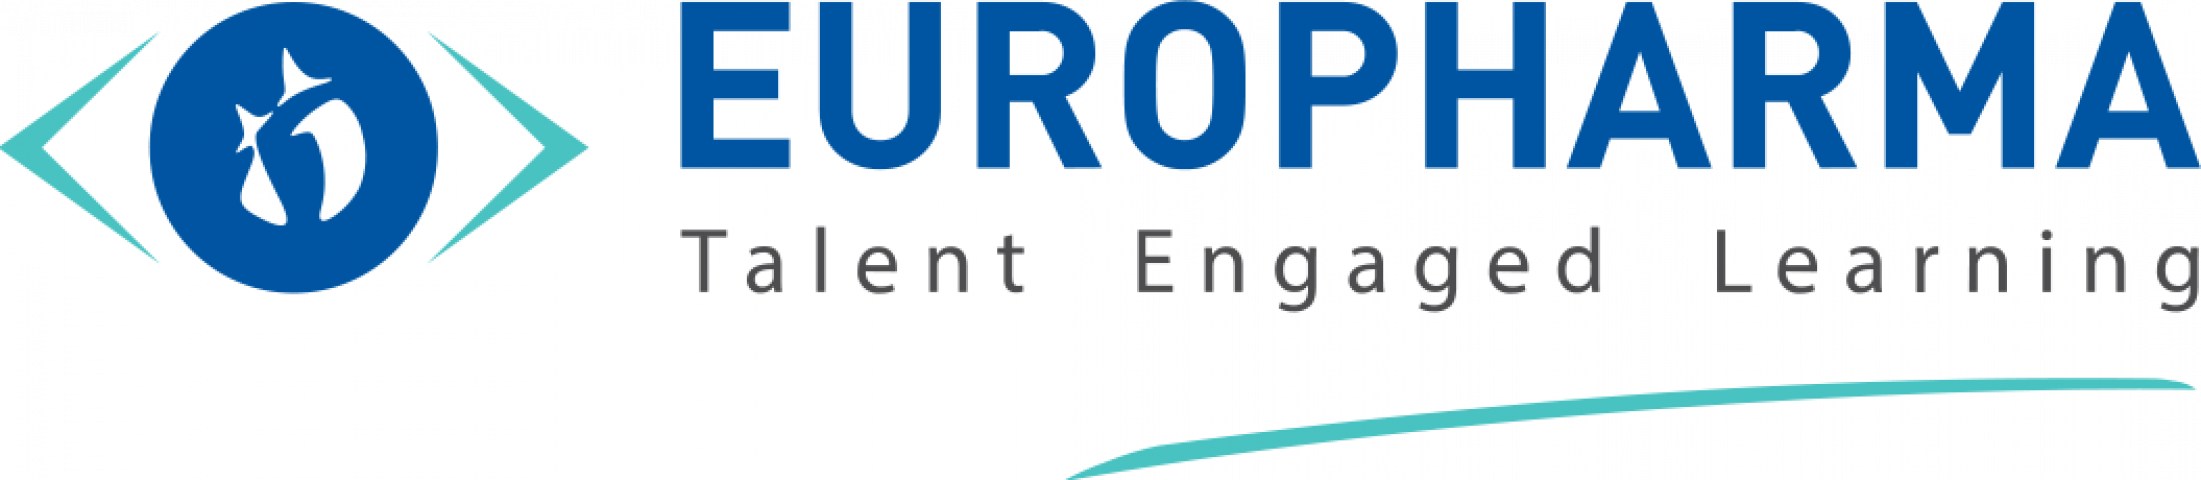 Europharmacie - logo